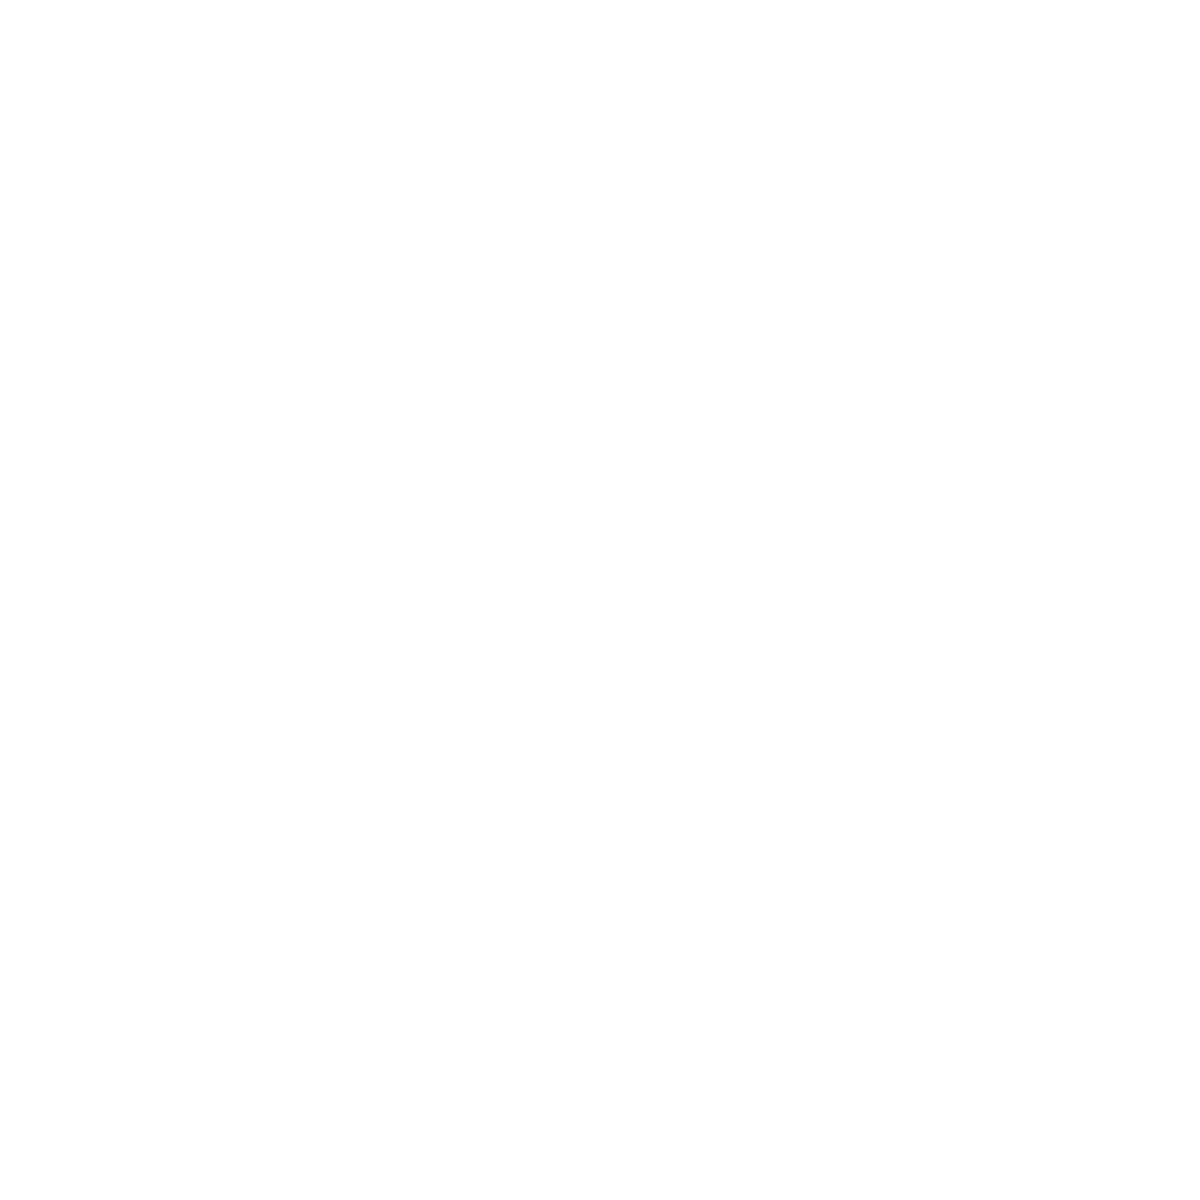 OntoChem background logo